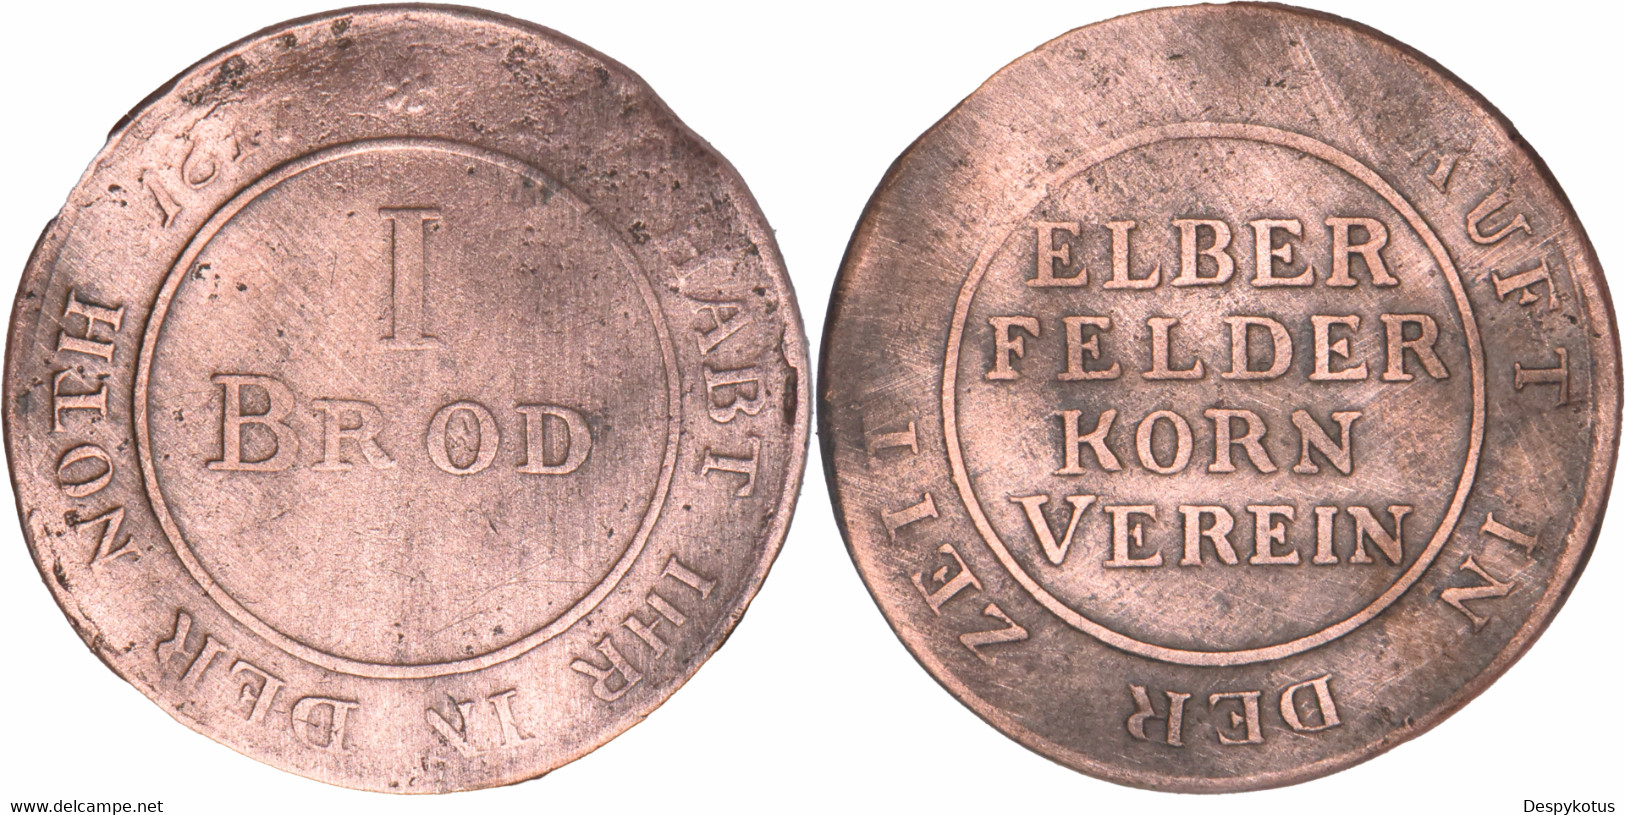 Allemagne - 1816 - SO HABT IHR IN DER NOTH I BROD - KAUFT IN DER ZEIT 1816 - ELBER FELDER KORN VEREIN - 03-067 - Monetary/Of Necessity